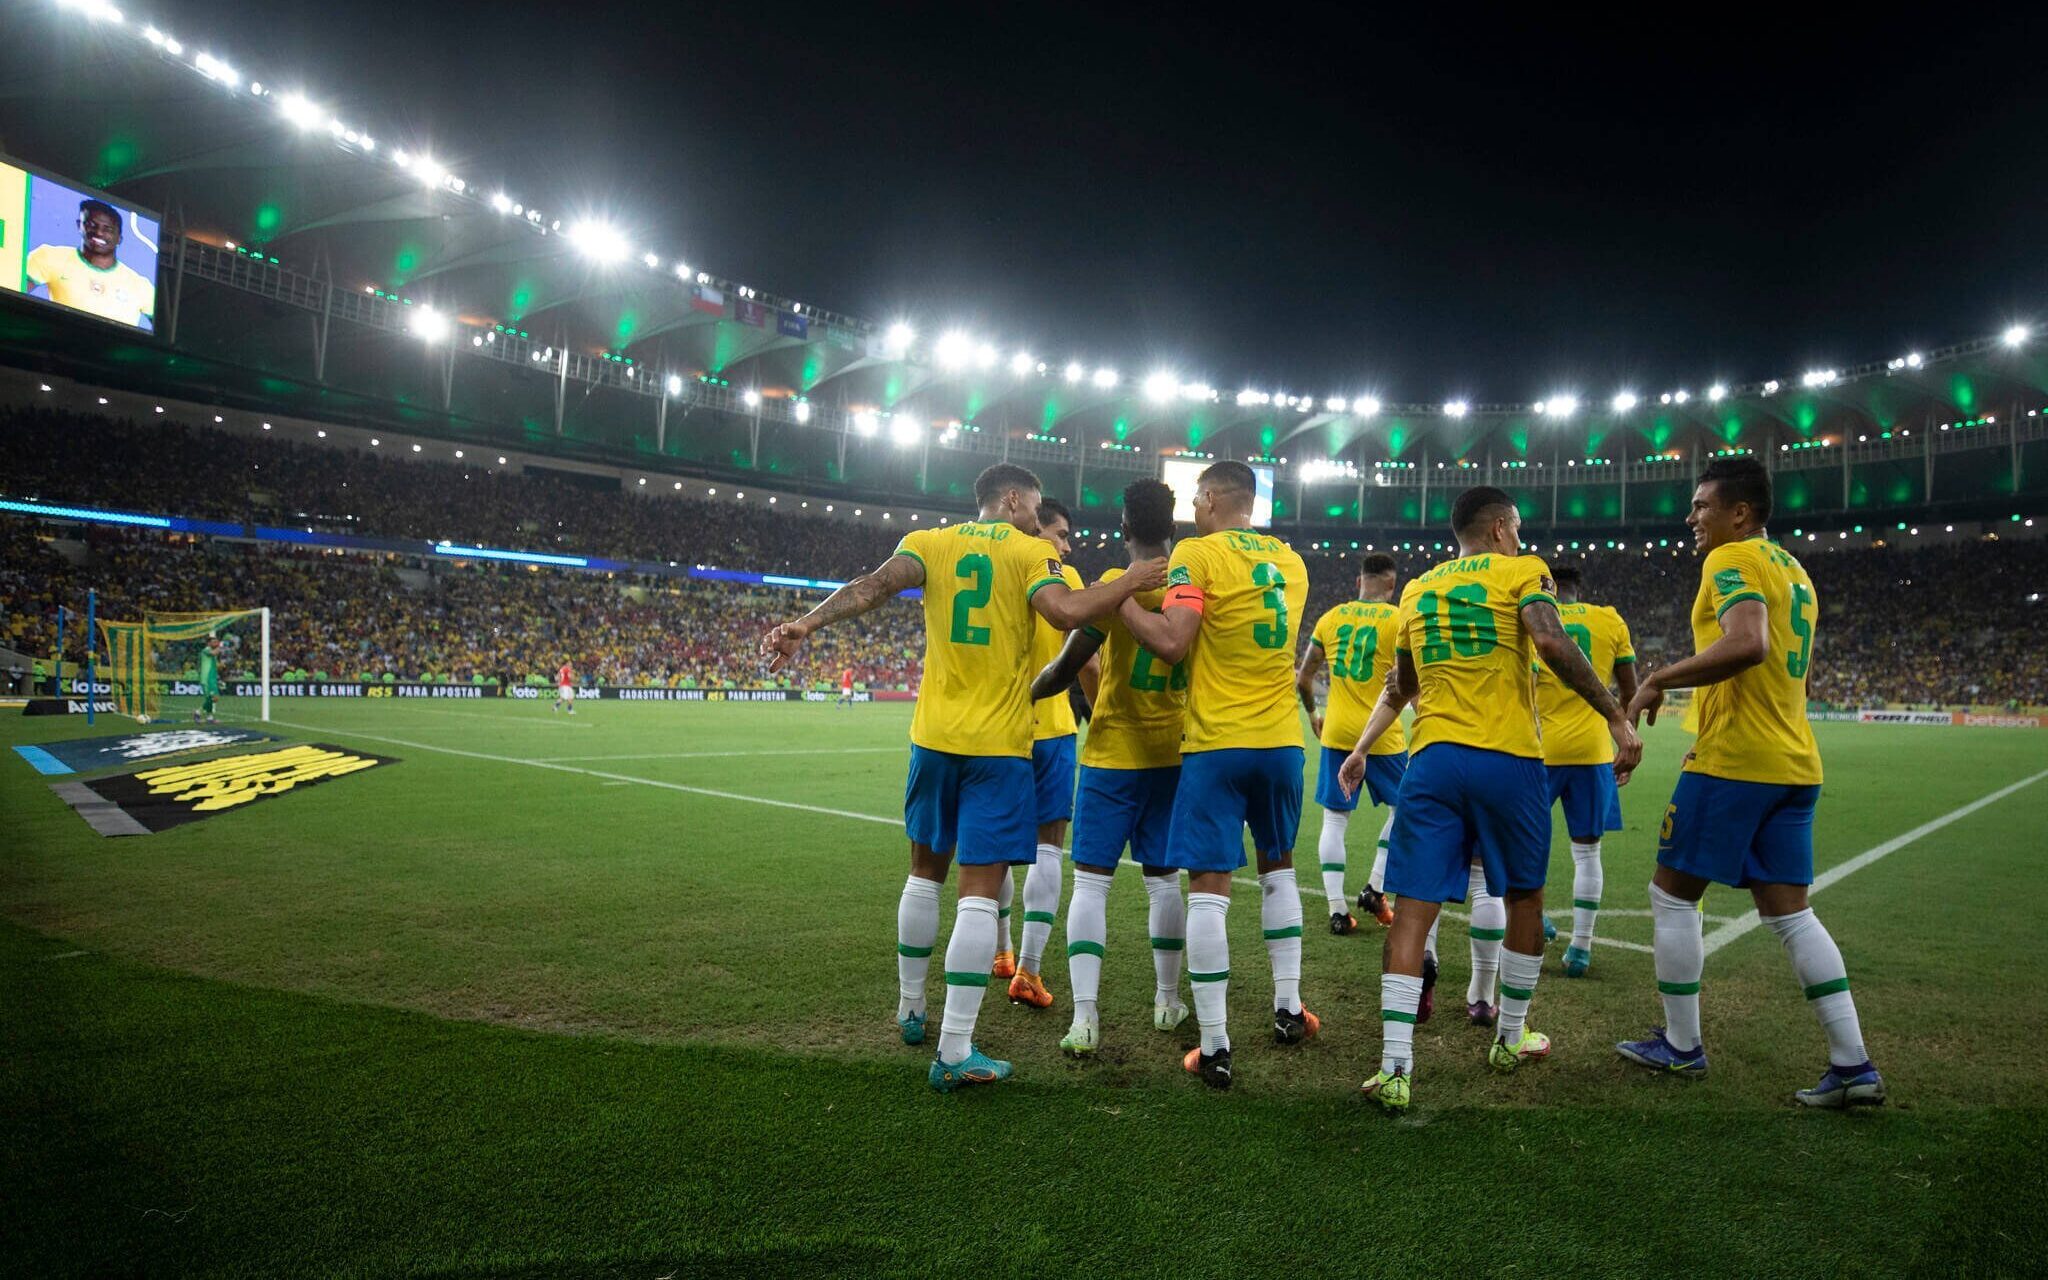 Jogo entre Brasil e Argentina em São Paulo será aberto ao público